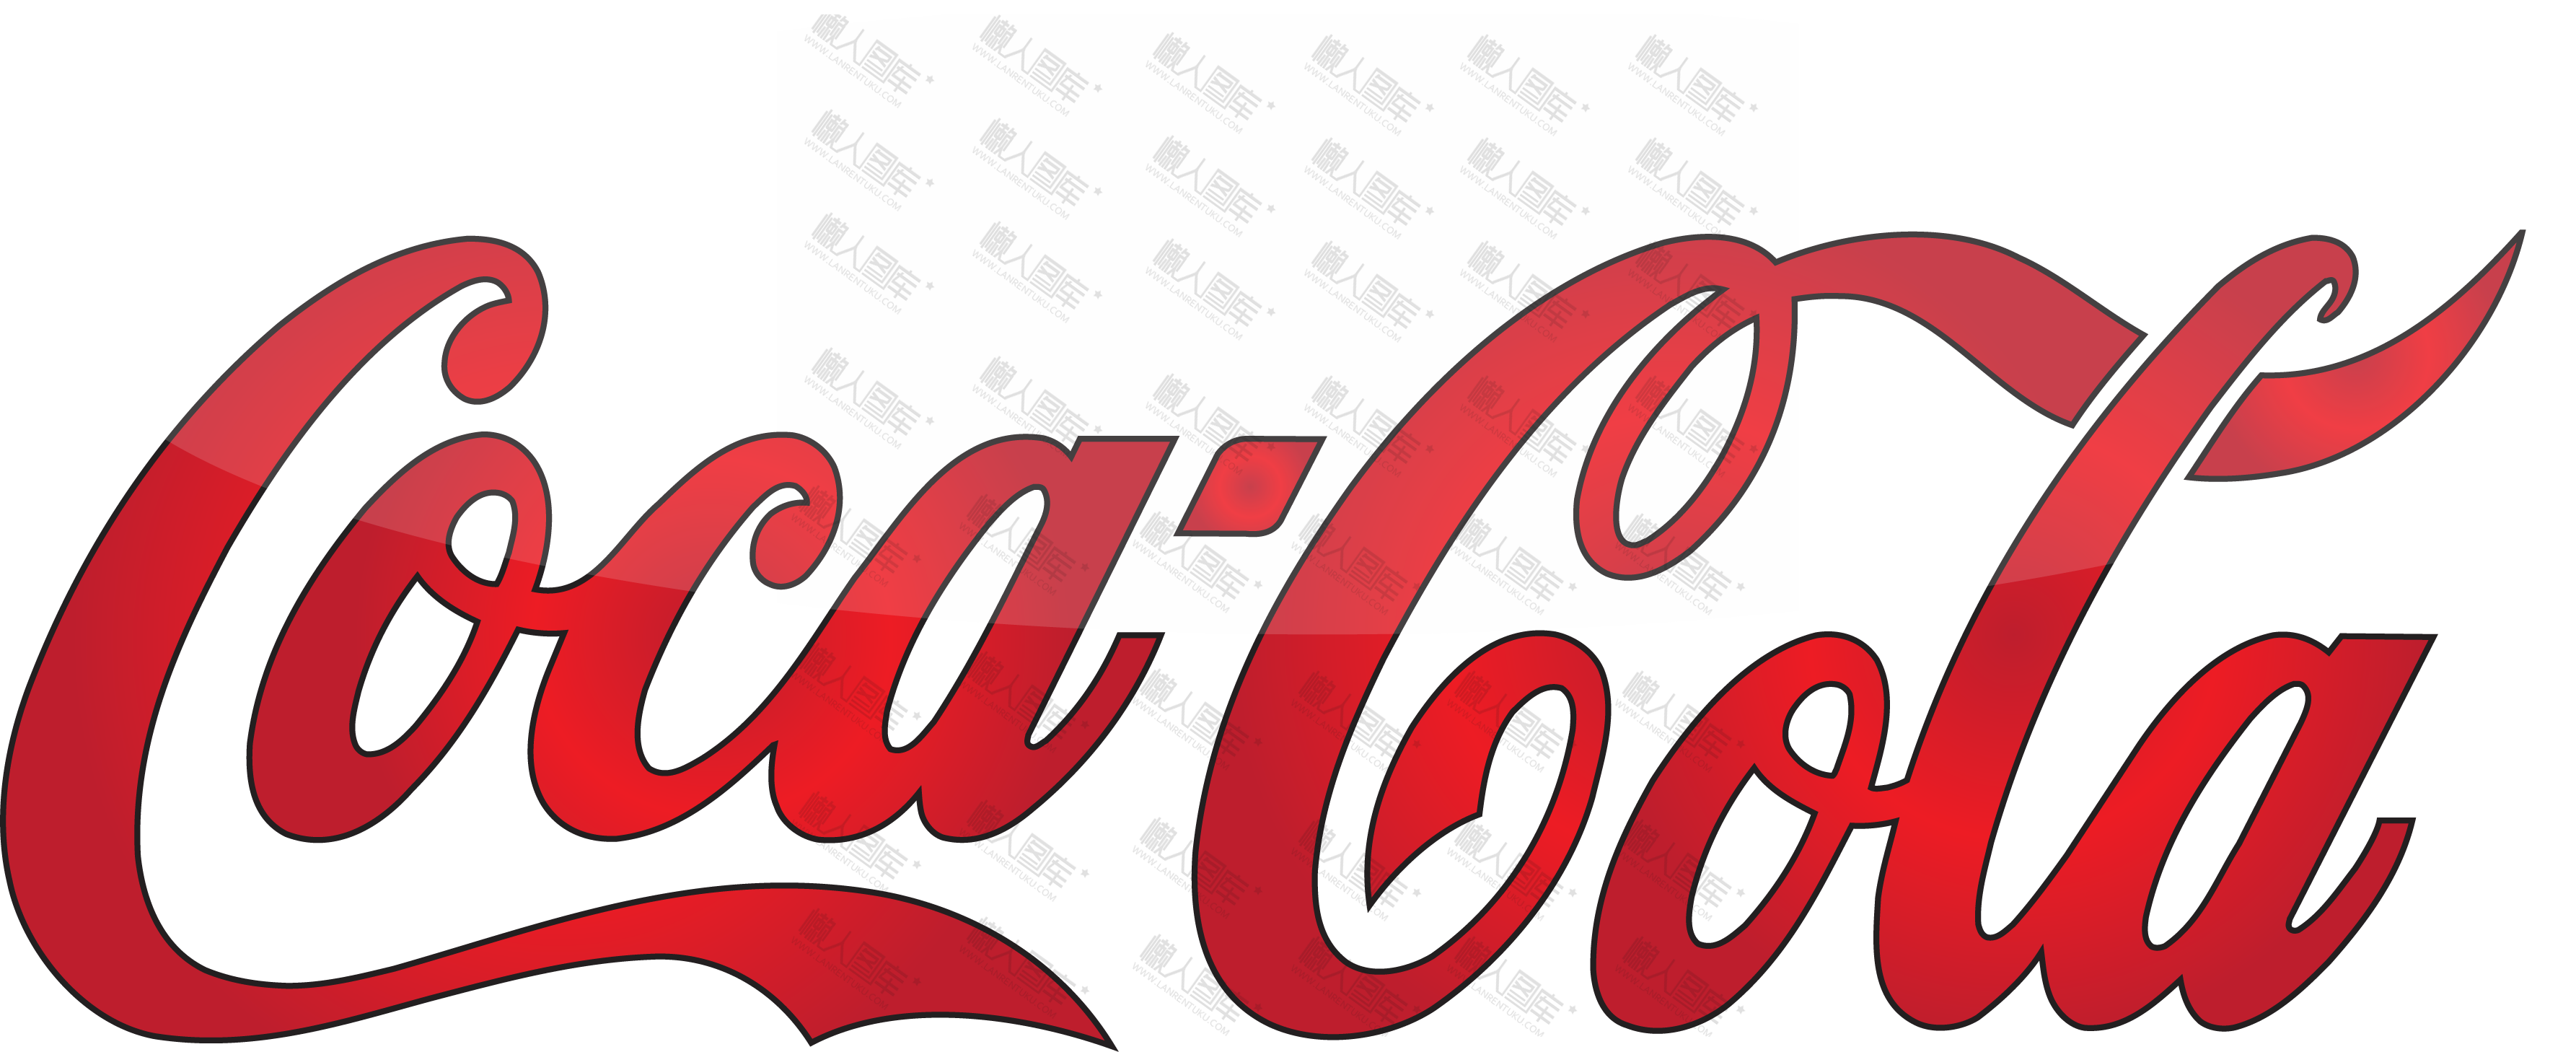 可口可乐潮图logo